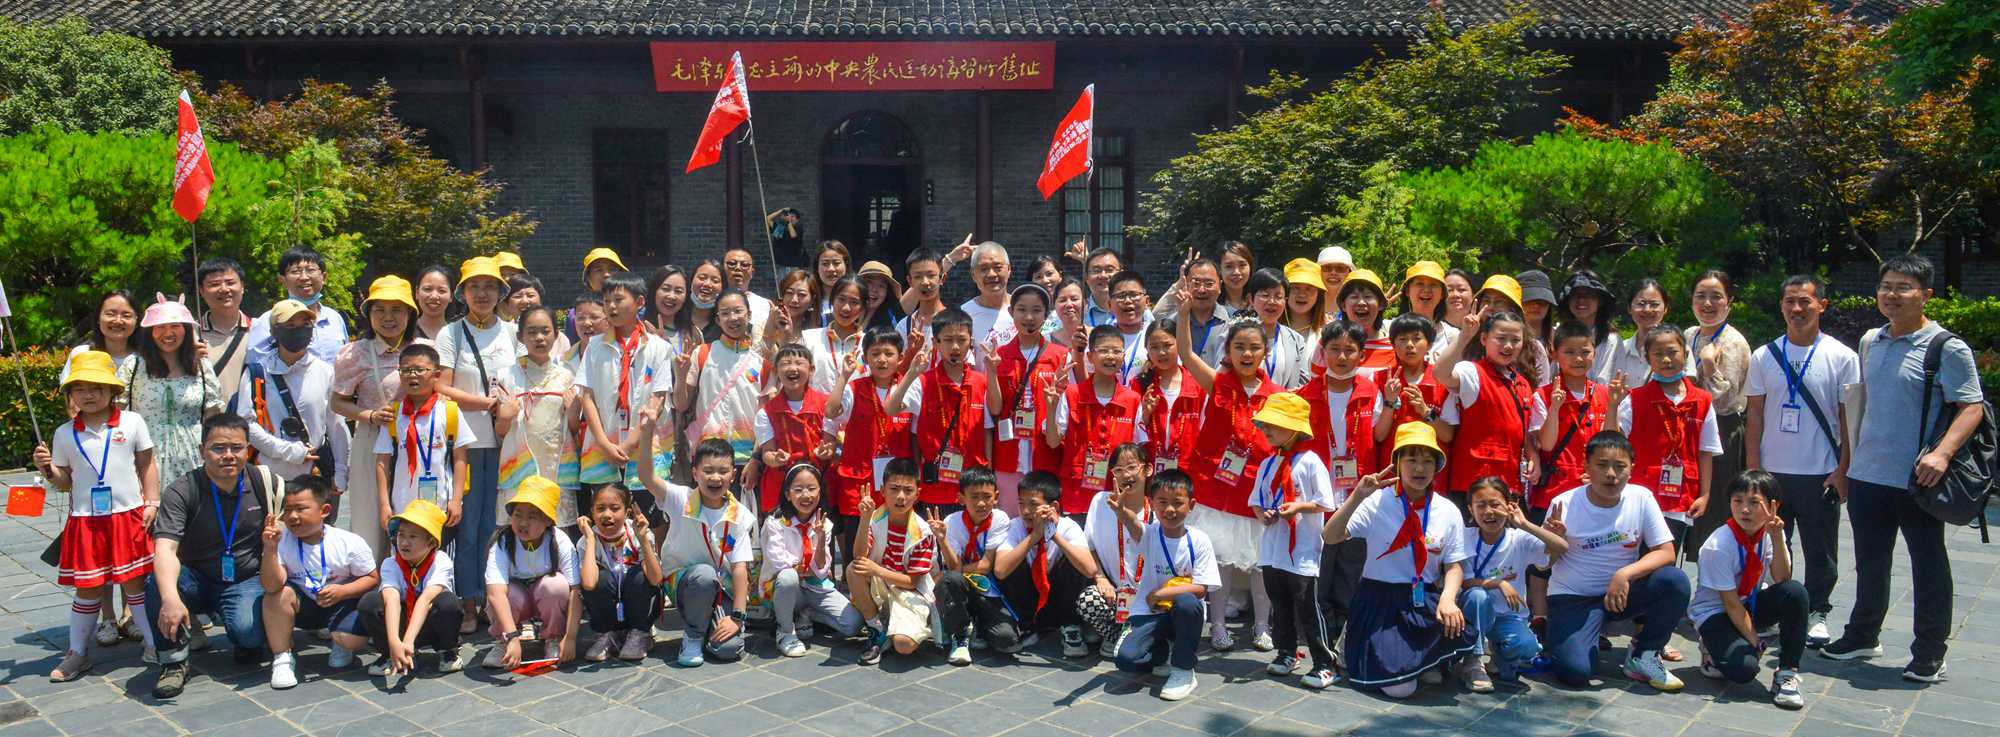 感受长江文化魅力 “长江的孩子”来武汉研学度“六一”